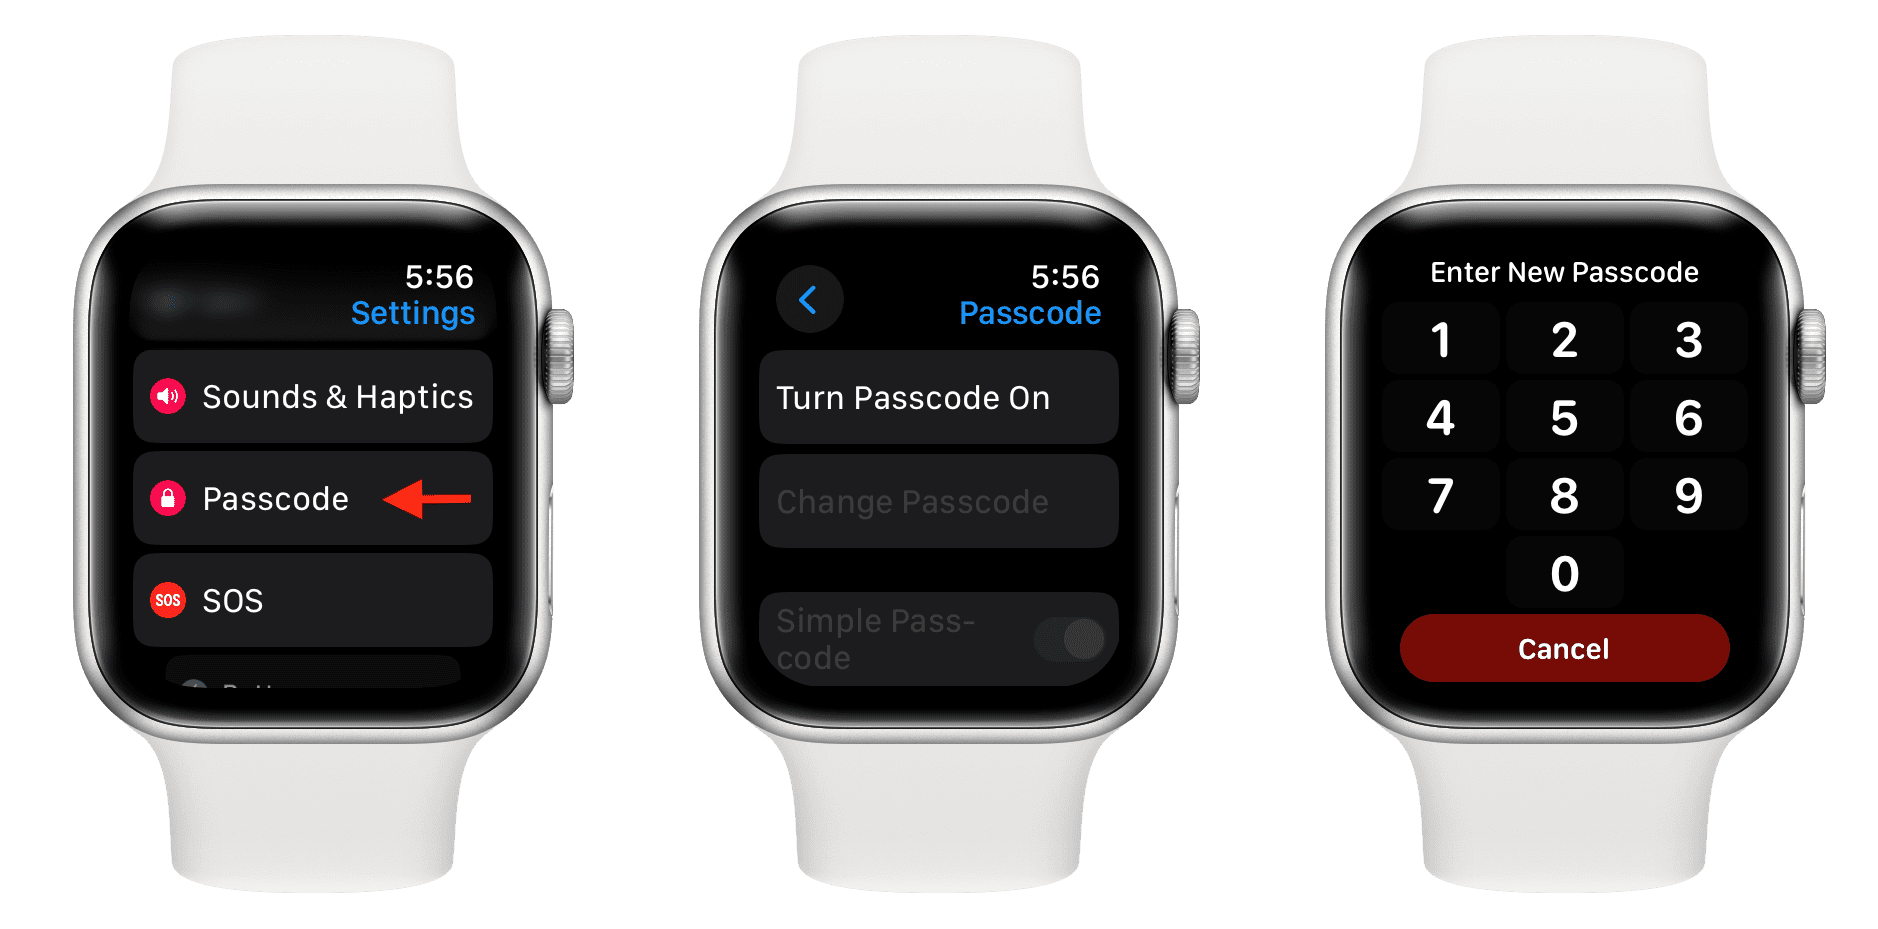 Turn On Passcode on Apple Watch